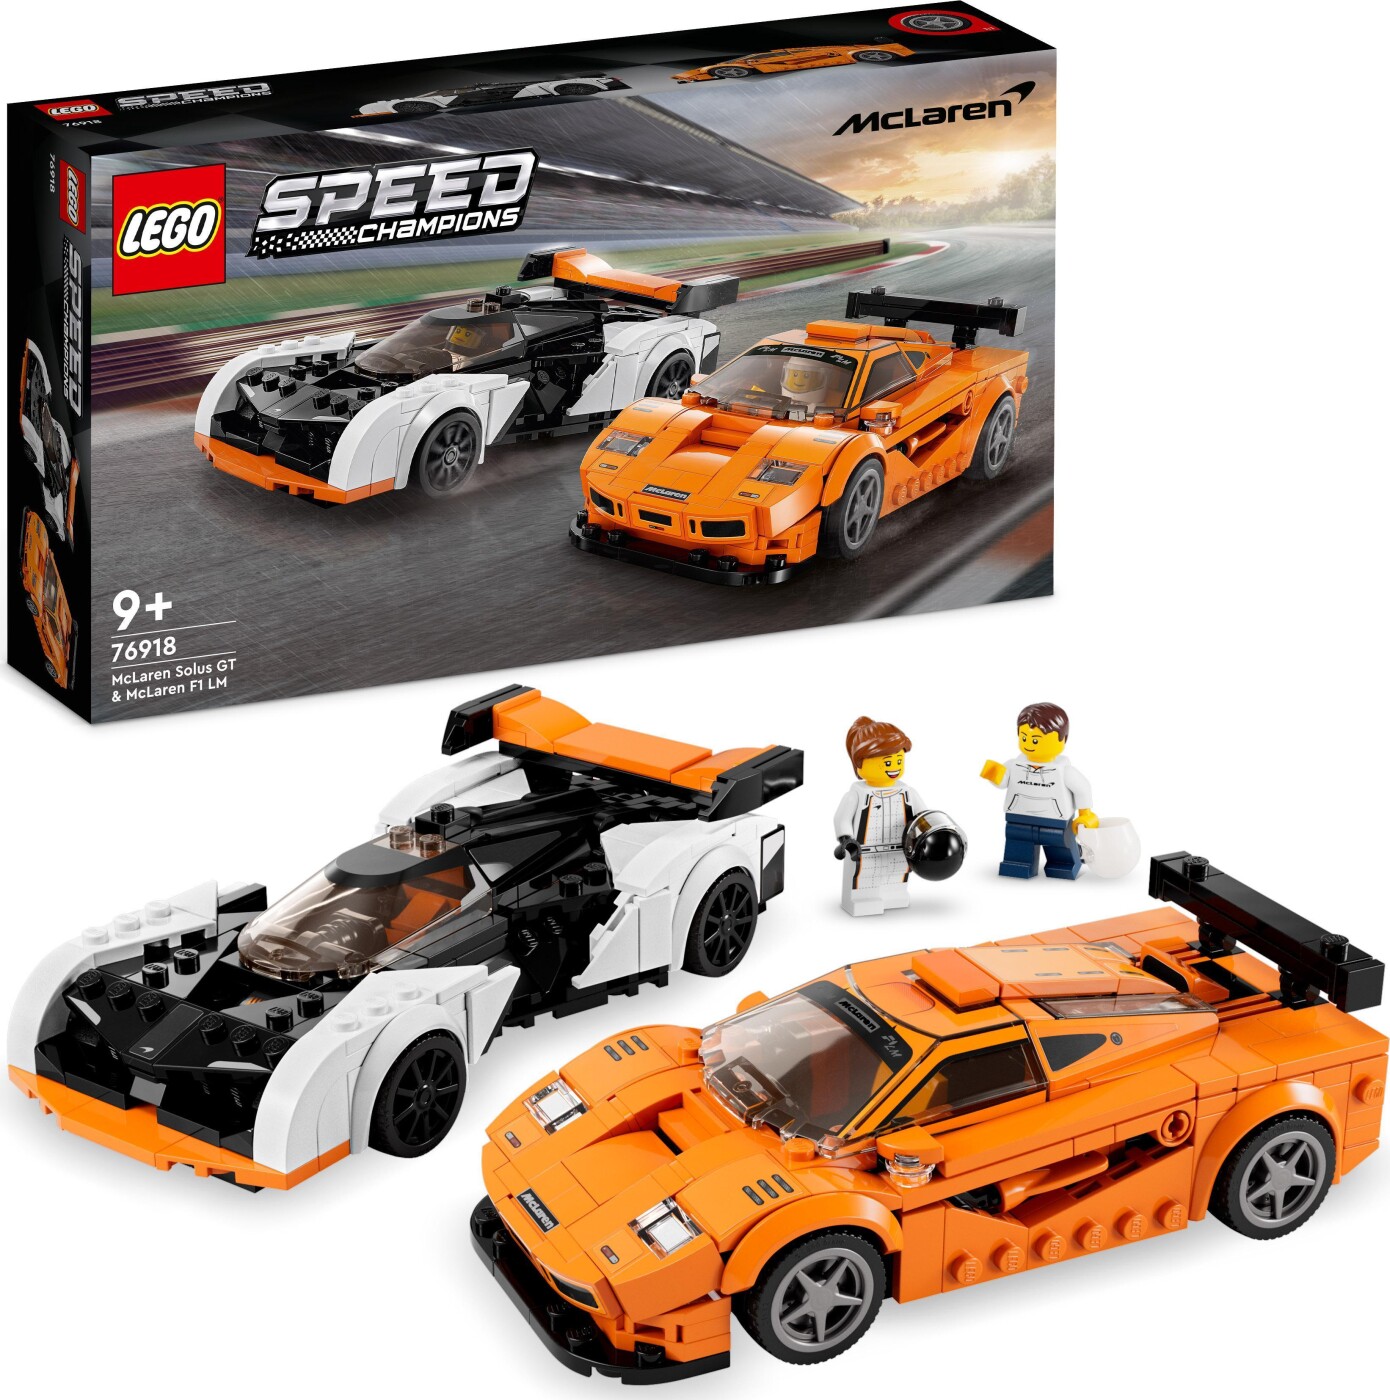 Billede af Lego Speed Champions - Mclaren Solus Gt Og Mclaren F1 Lm - 76918